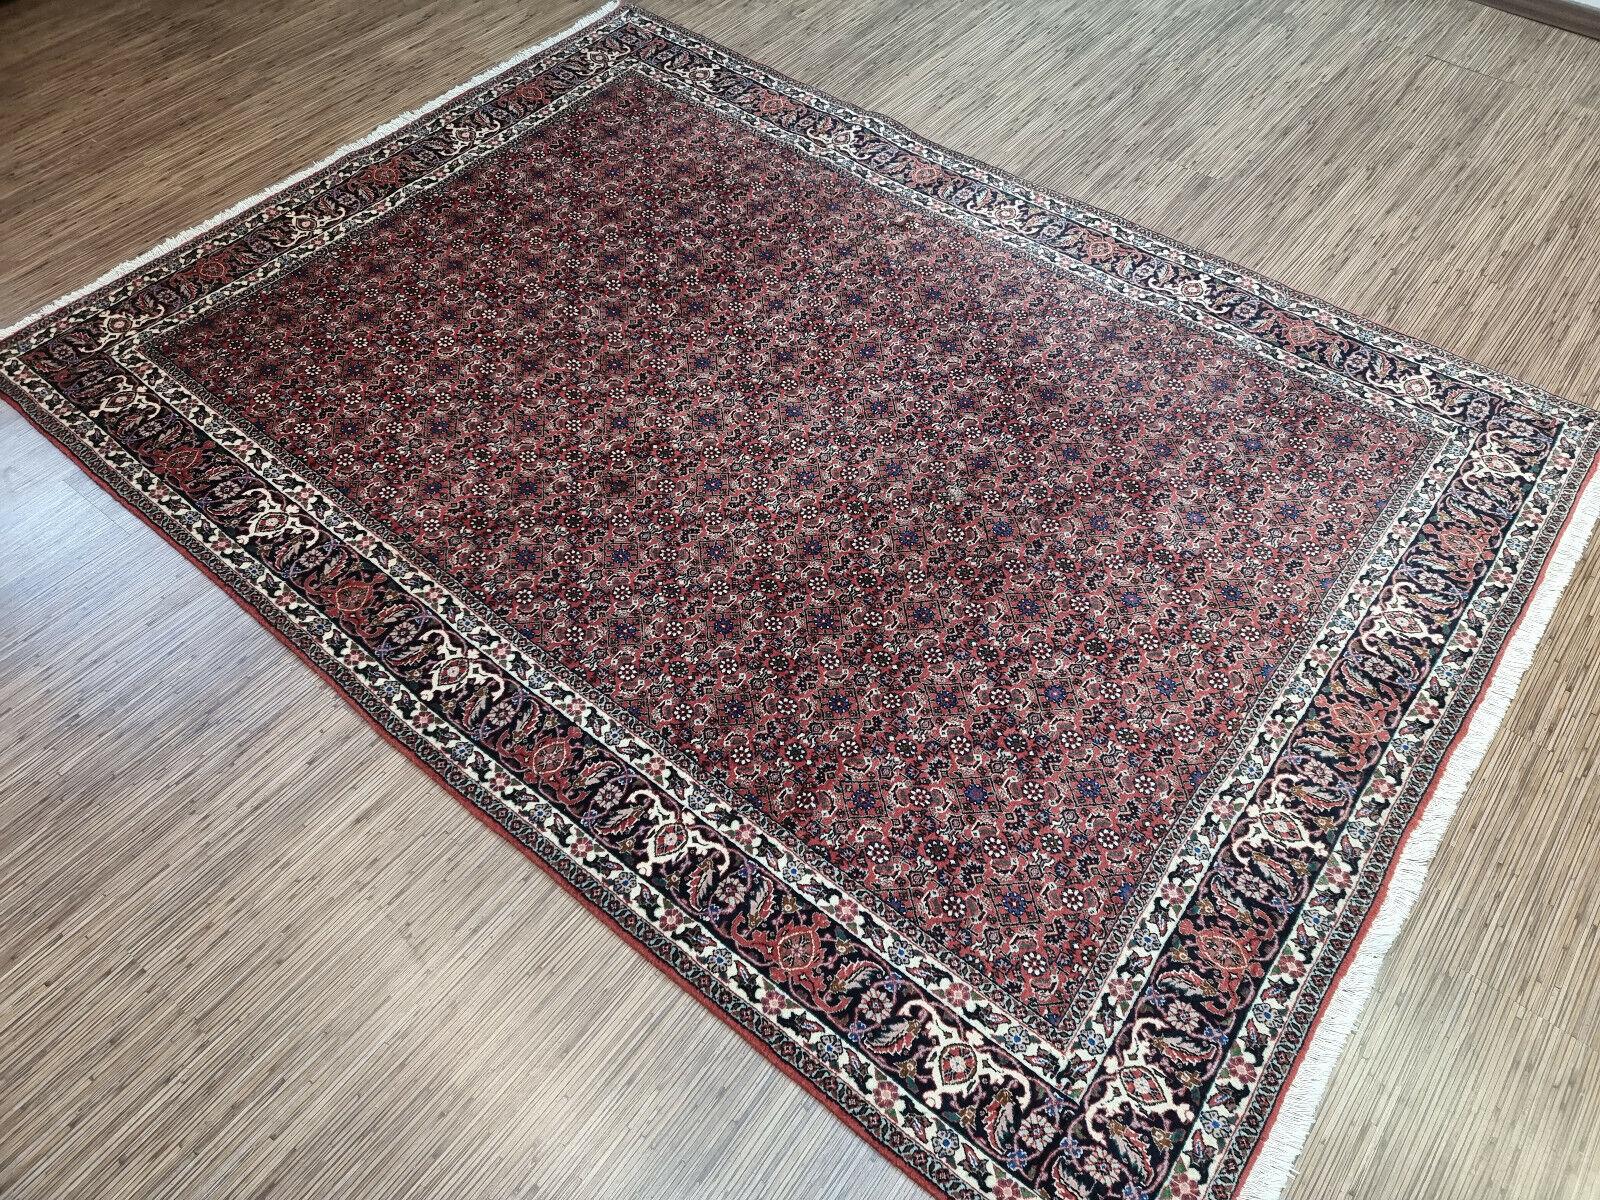 Verwandeln Sie Ihren Raum mit unserem handgefertigten Bidjar-Teppich im persischen Vintage-Stil. Dieser atemberaubende Teppich ist ein Meisterwerk der Handwerkskunst und des Designs und stammt aus den 1970er Jahren. Er misst 5,7' x 7,8' und ist